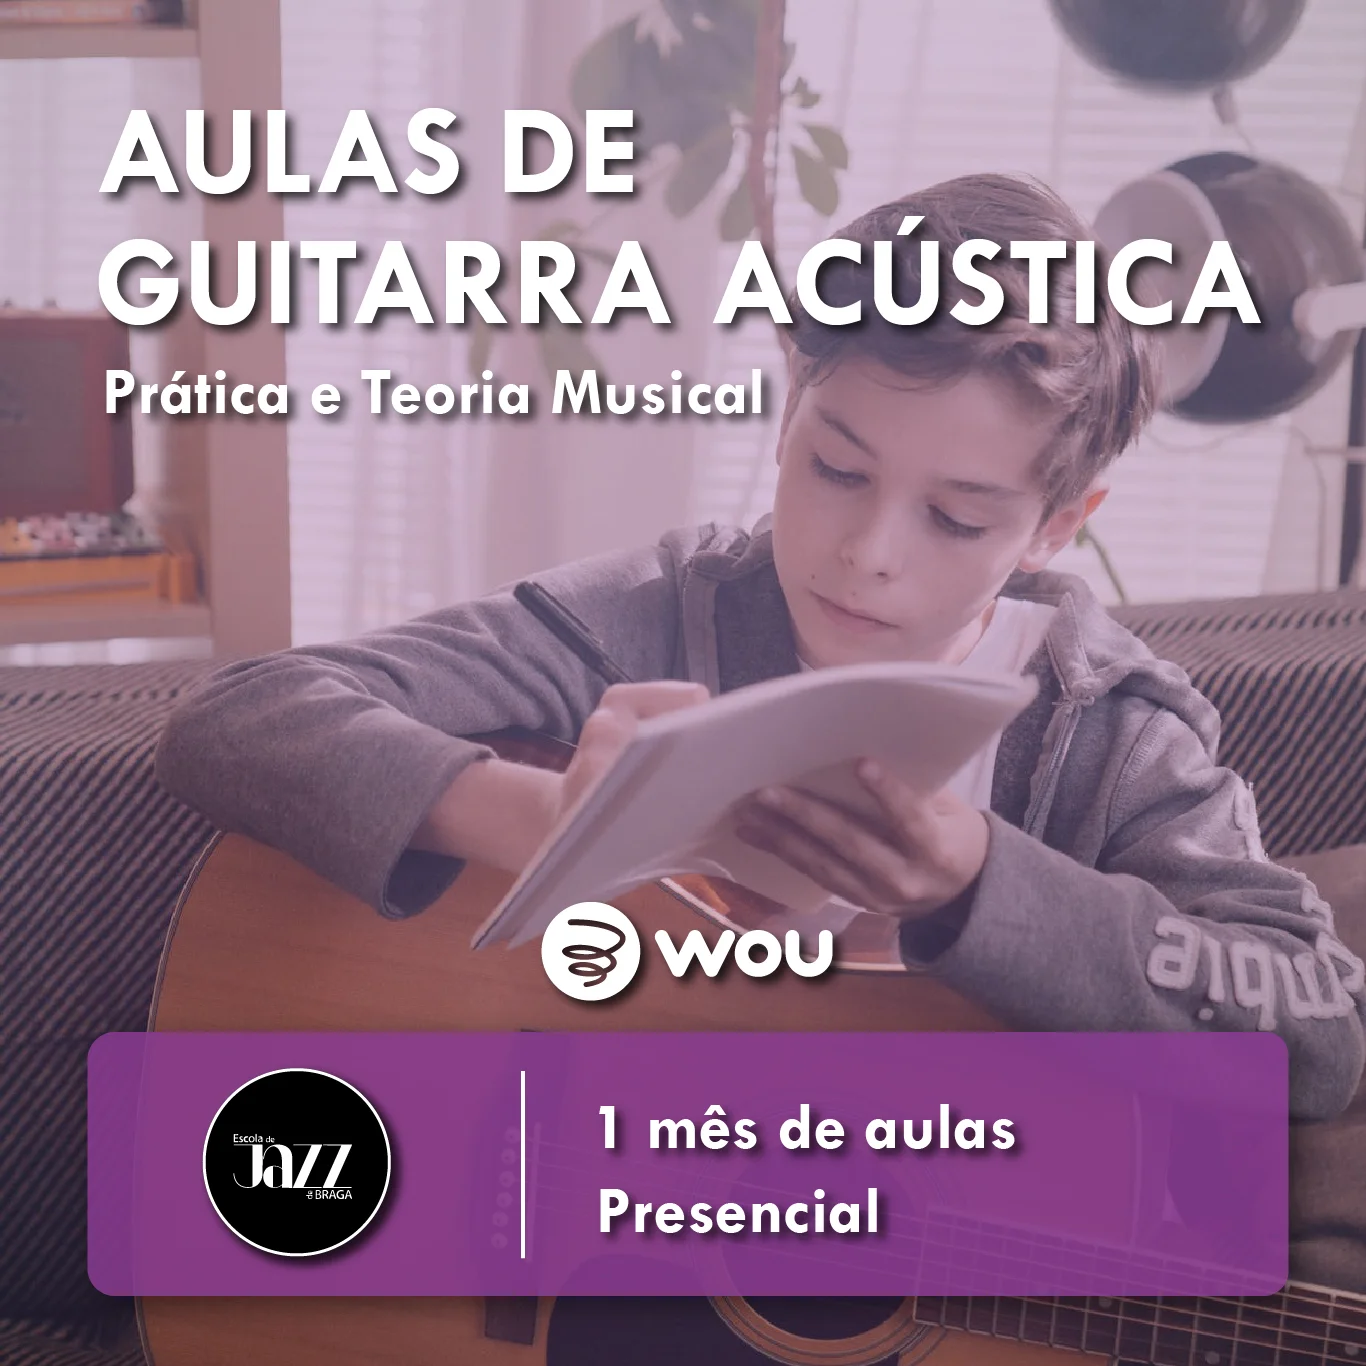 Acoustic Guitar Classes in Braga